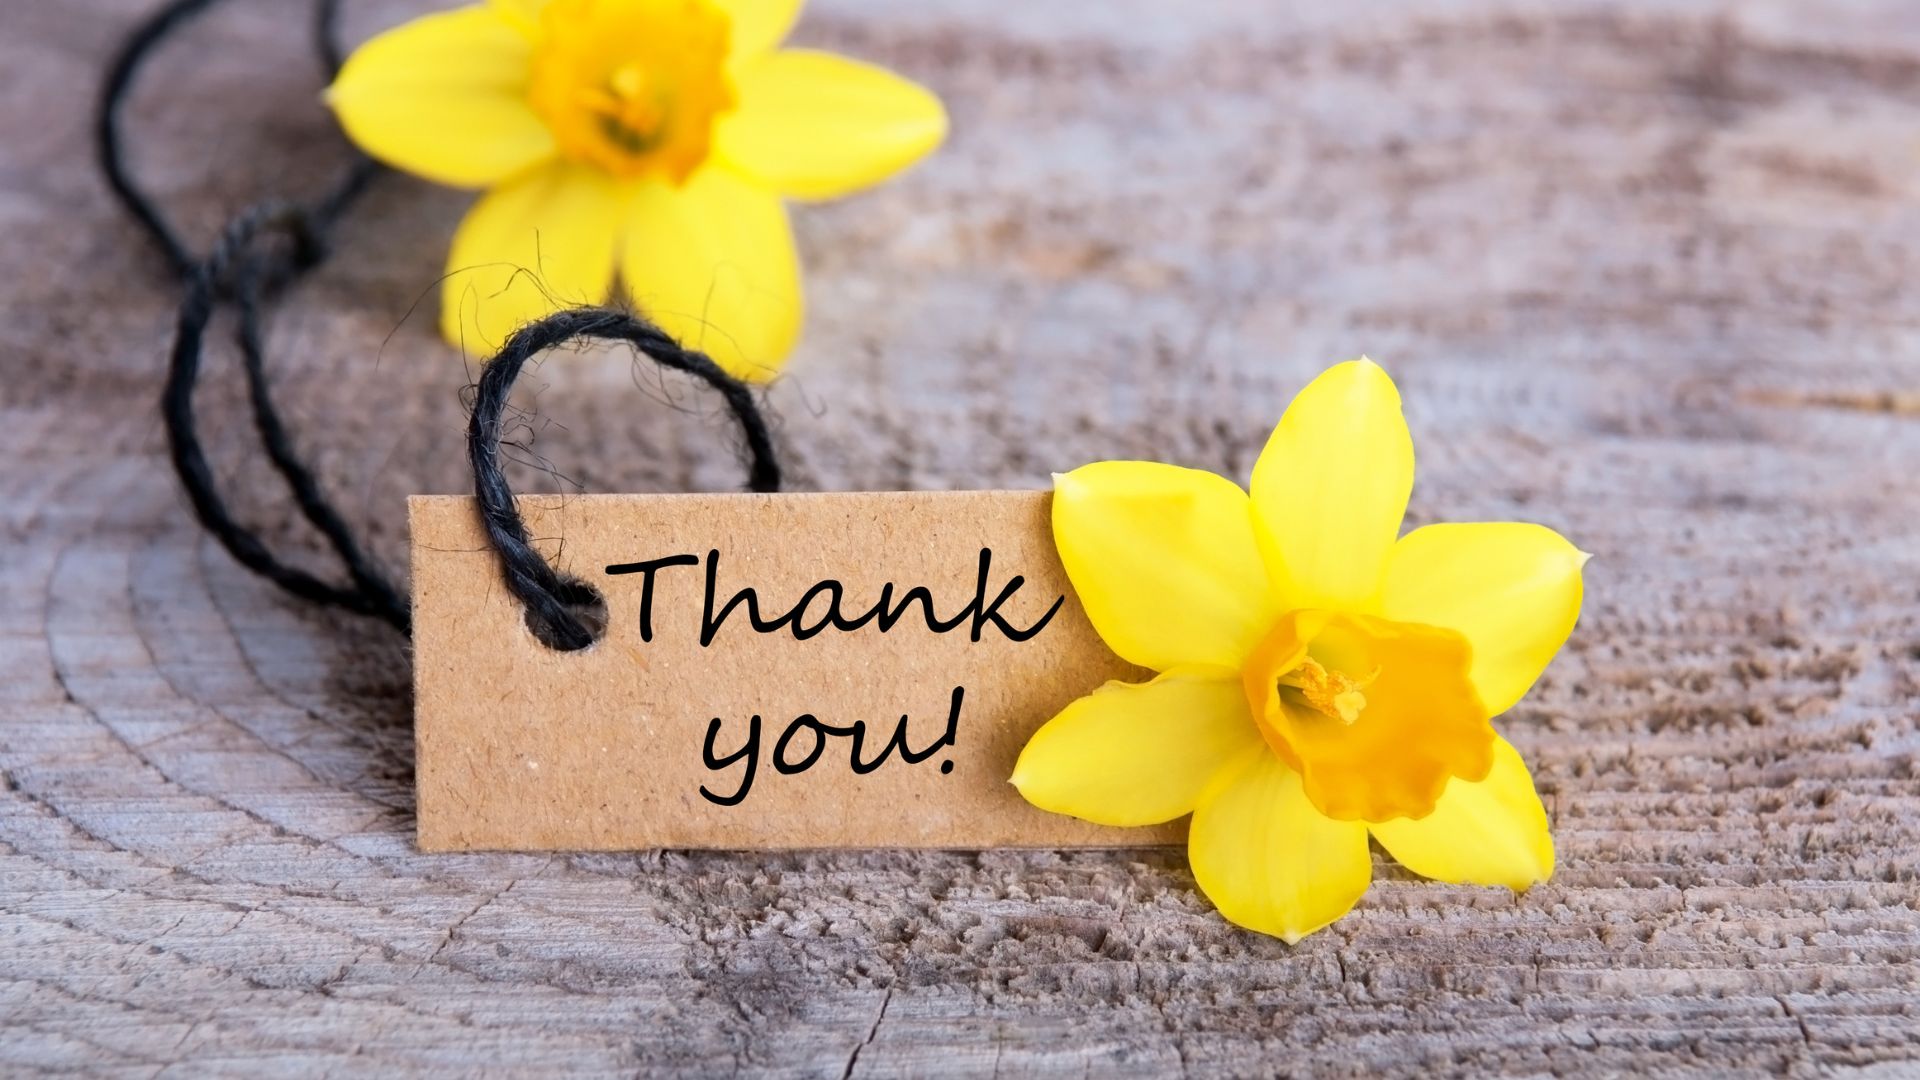 Imagem que traz duas flores amarelhas com uma placa com o dizer obrigado em inglês (thank you!)